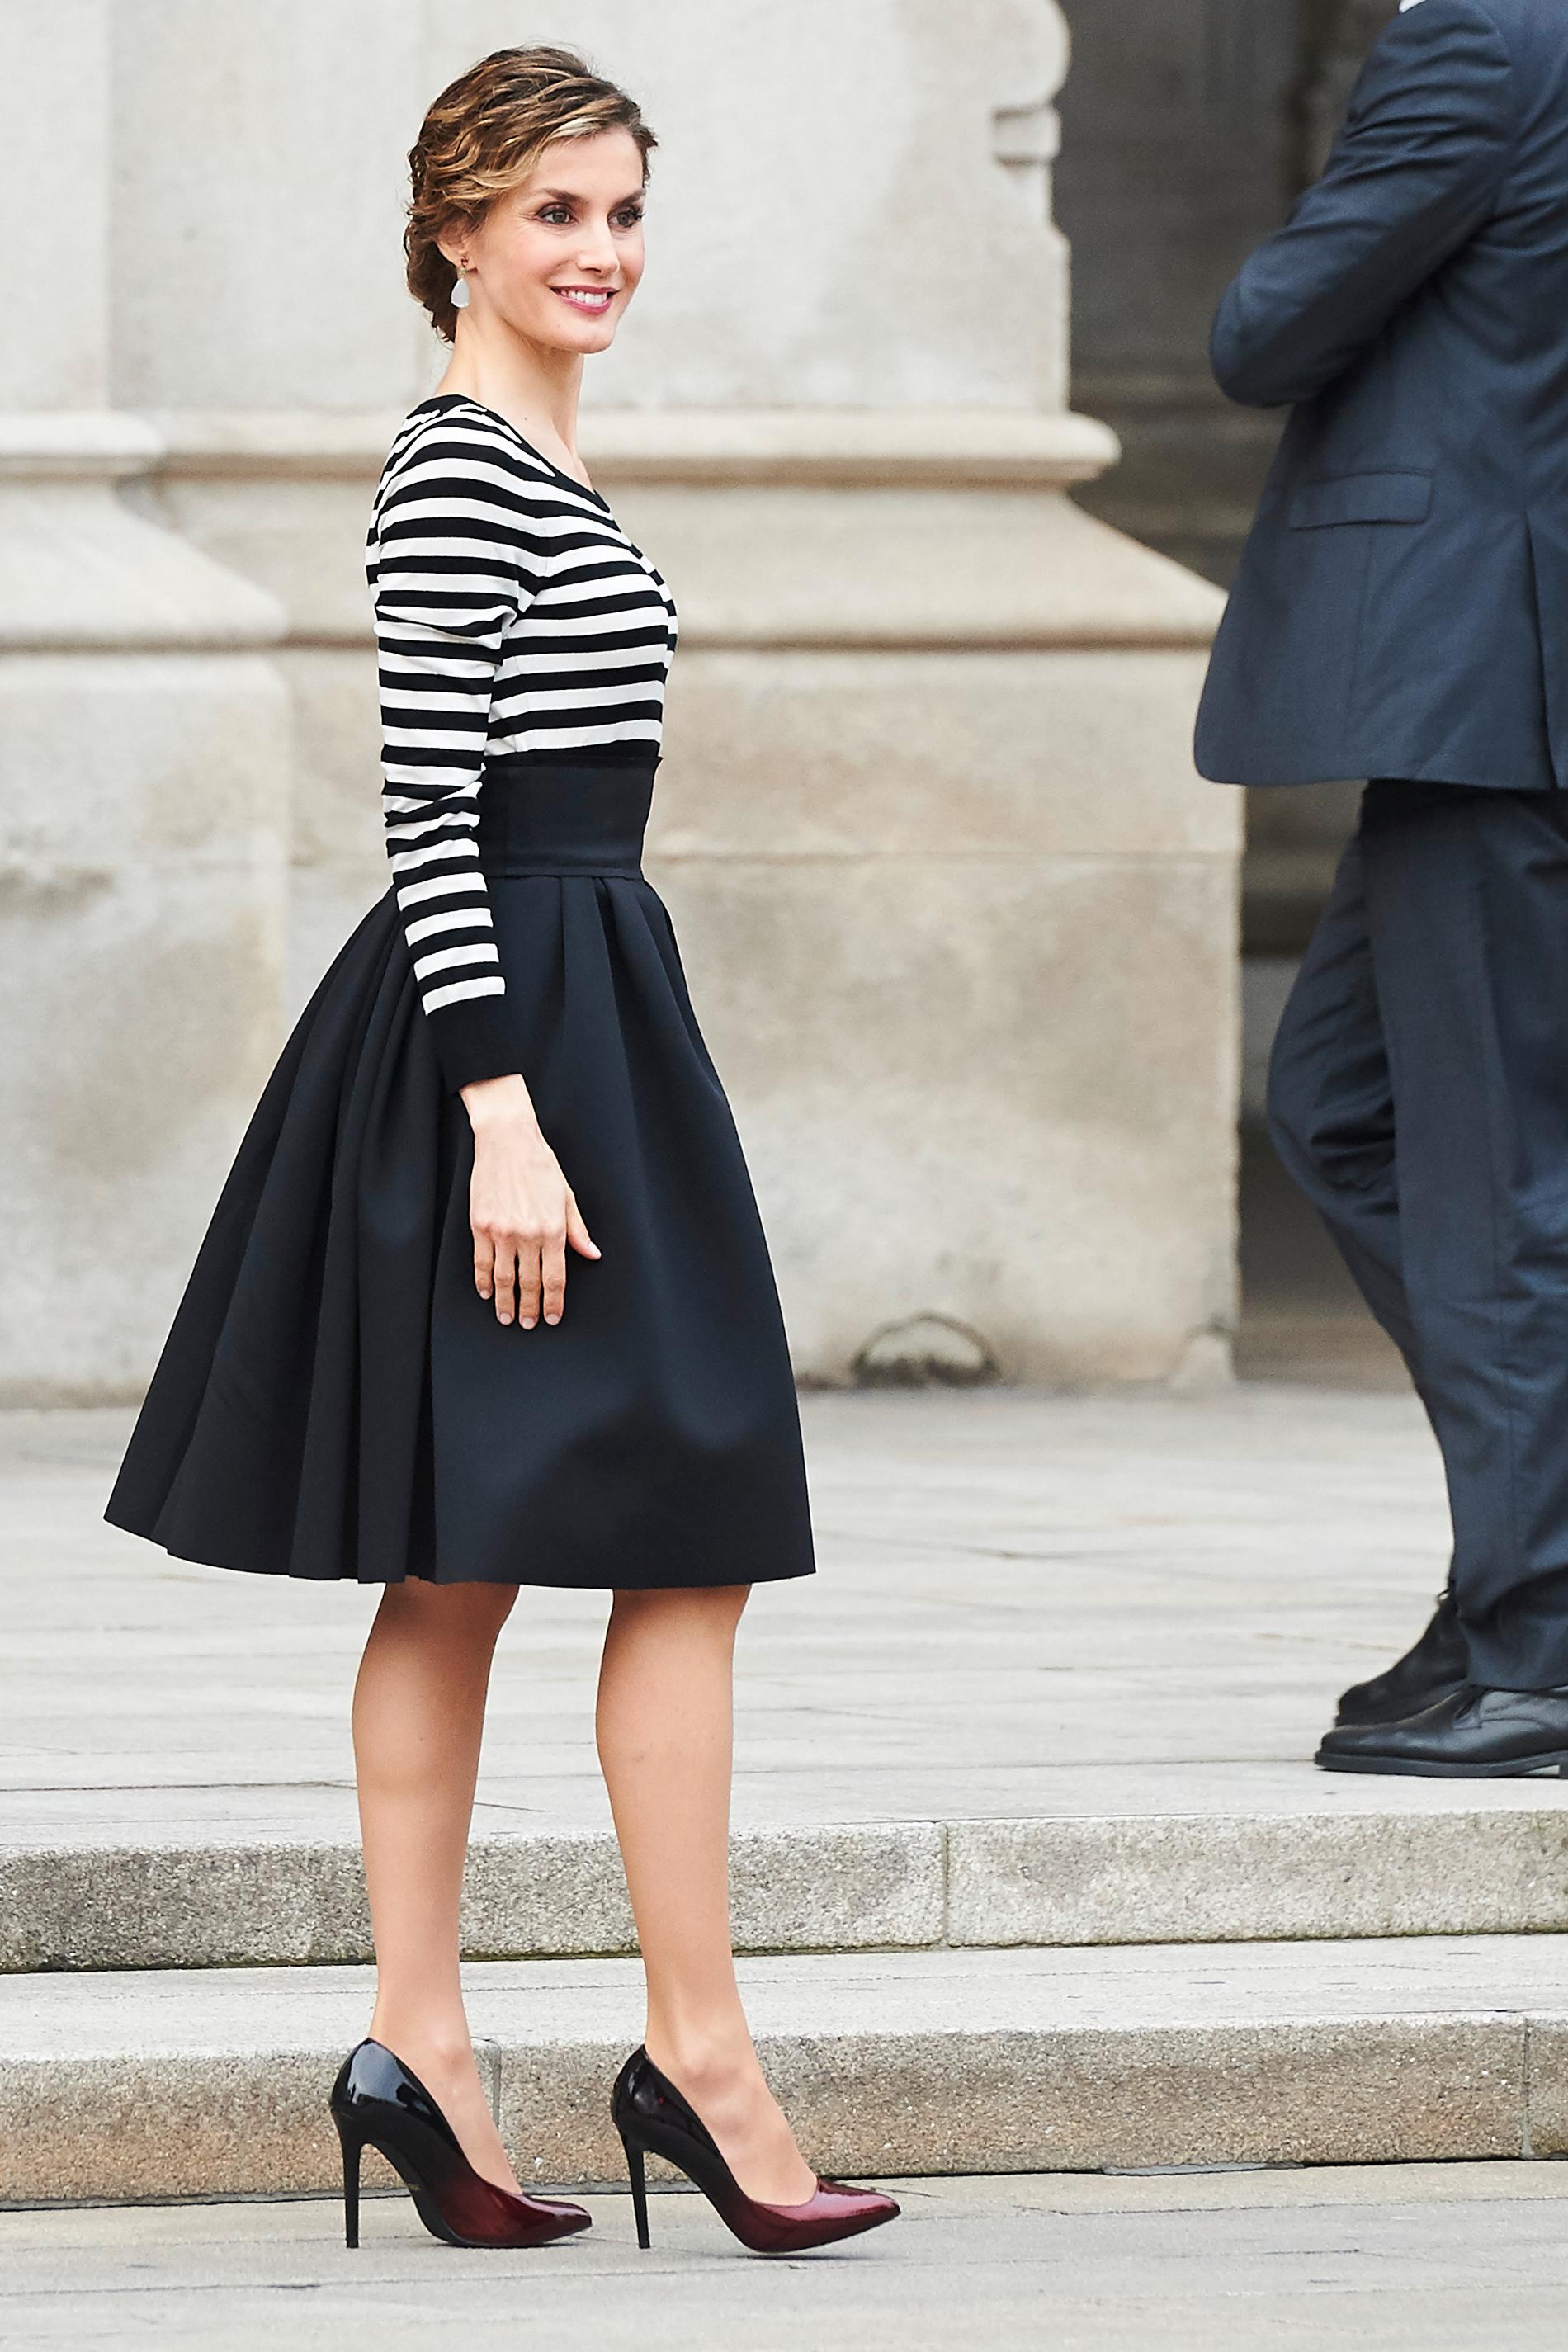 Drottning Letizia av Spanien Letizia ser fantastsikt härligt avslappnad ut i vippig kjol och randig tröja. Riktigt snyggt säger vi.